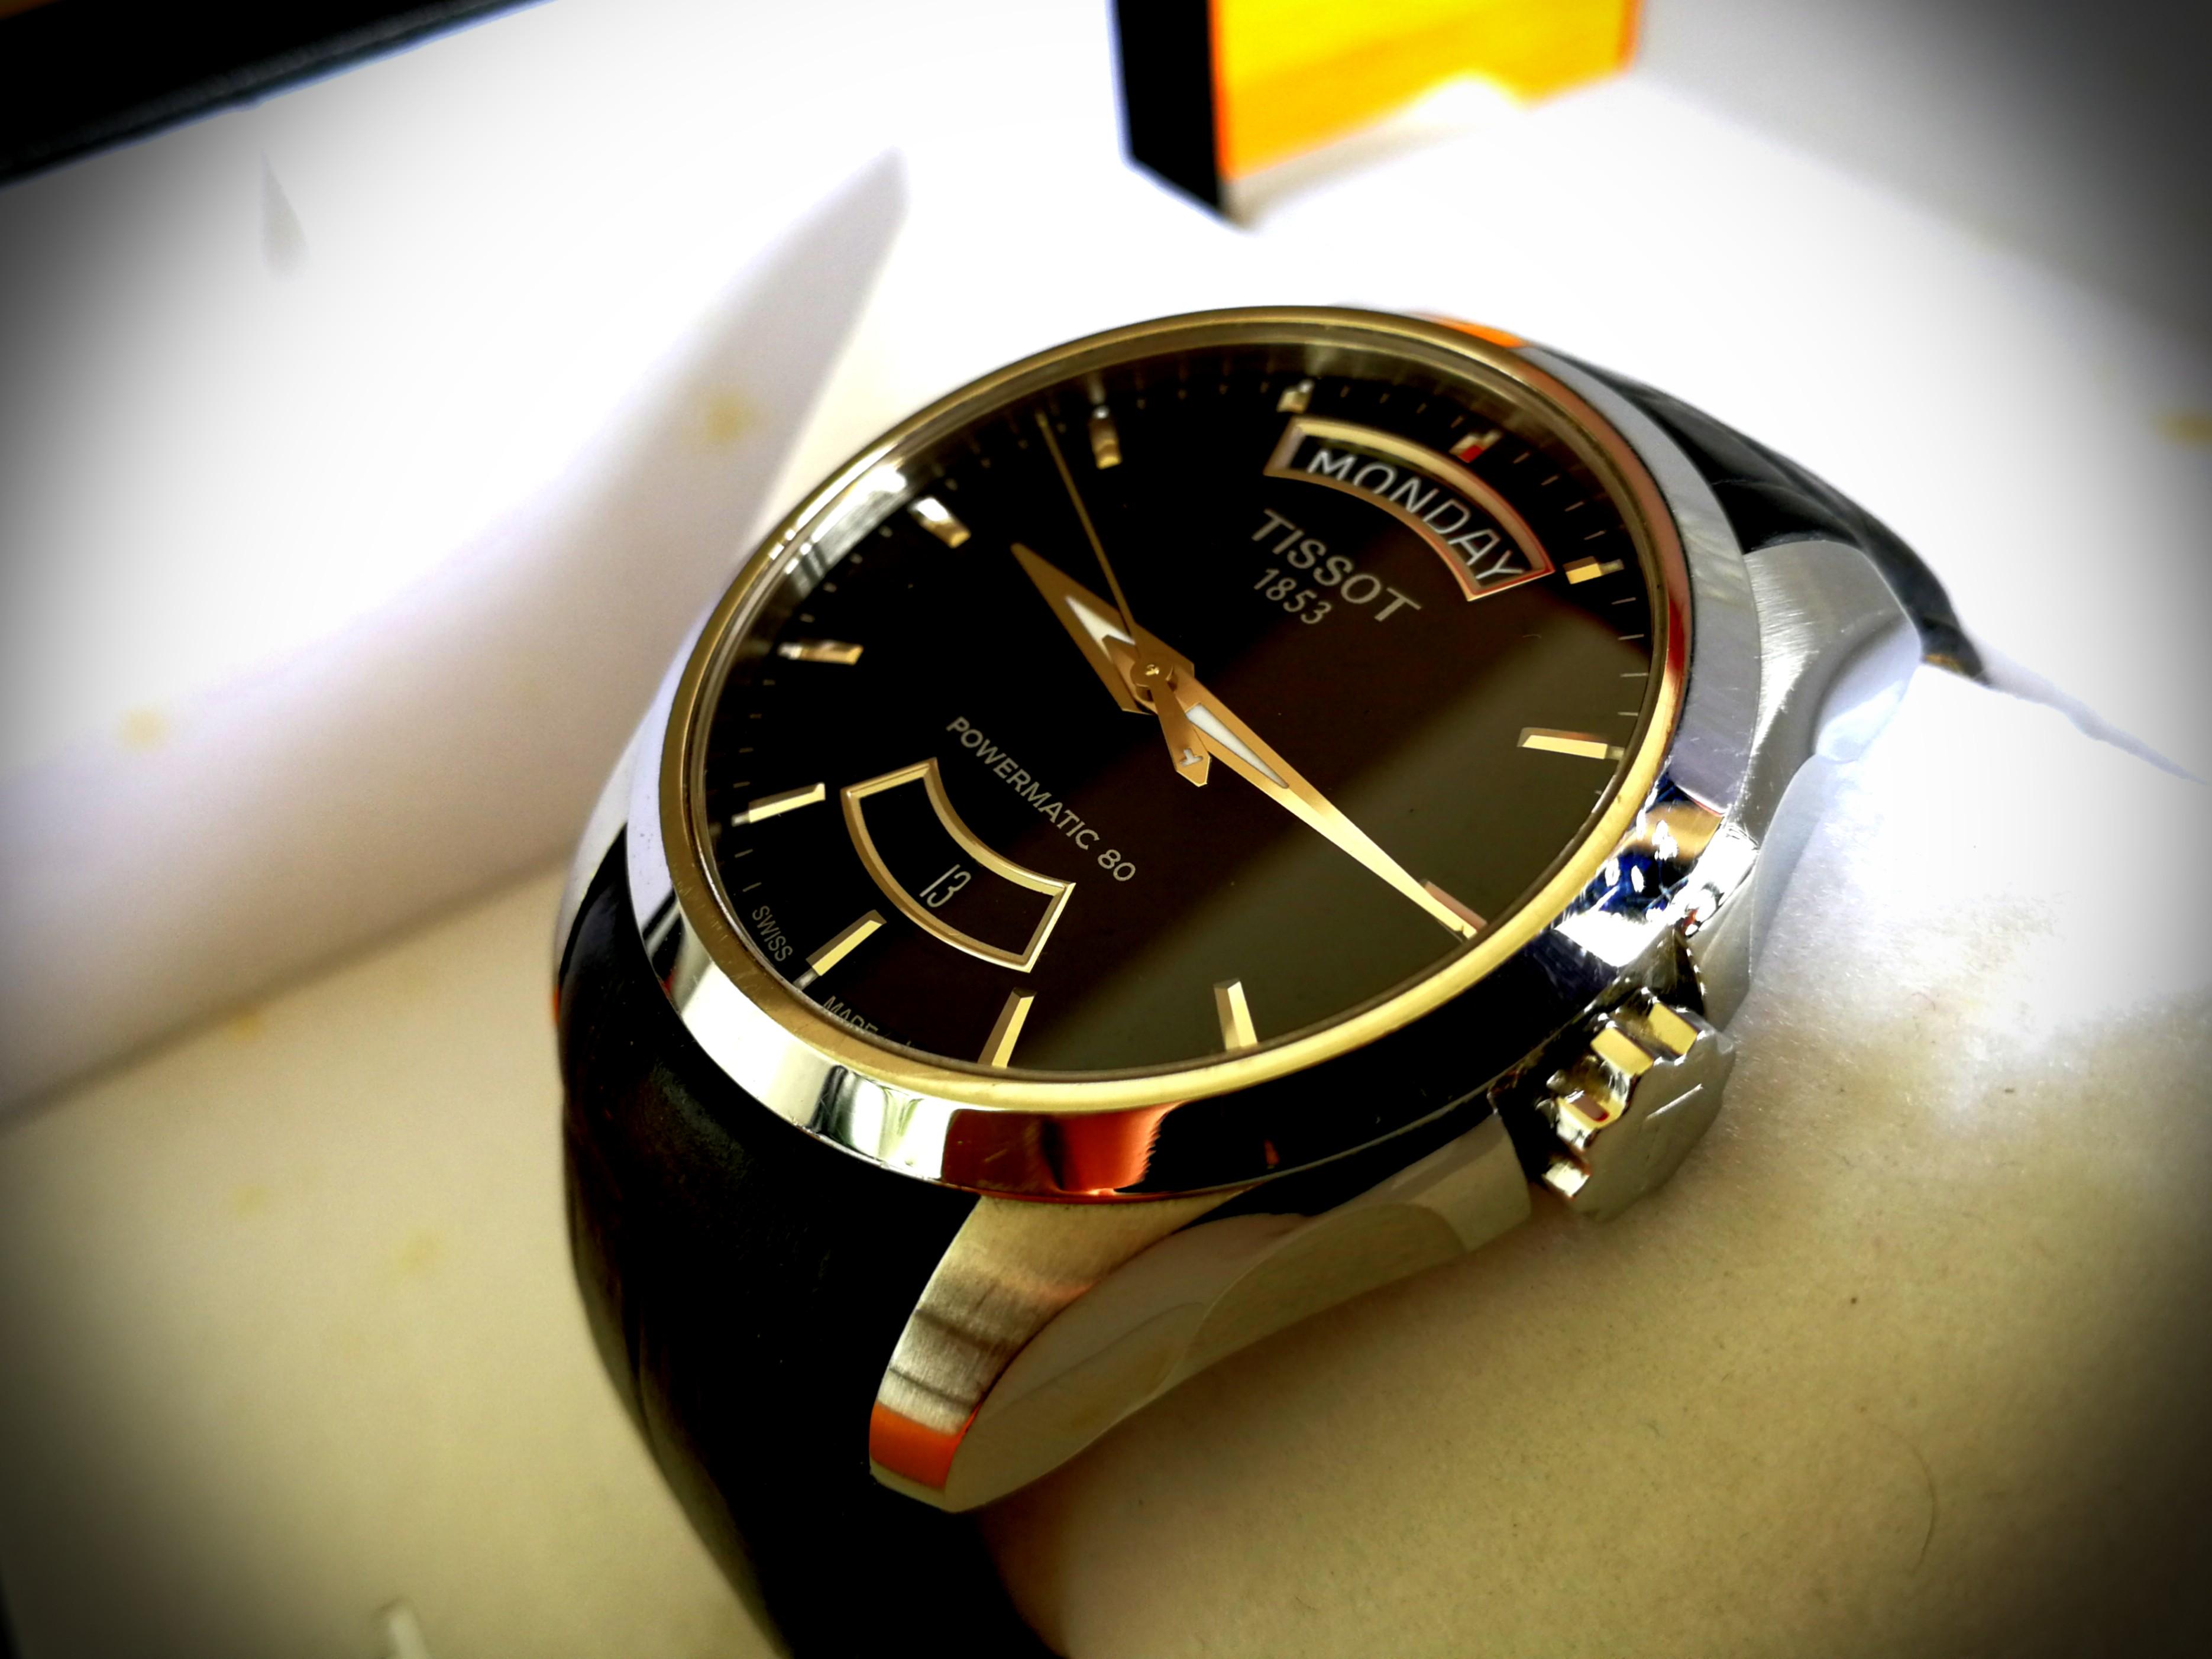 Swiss watch manufacturer